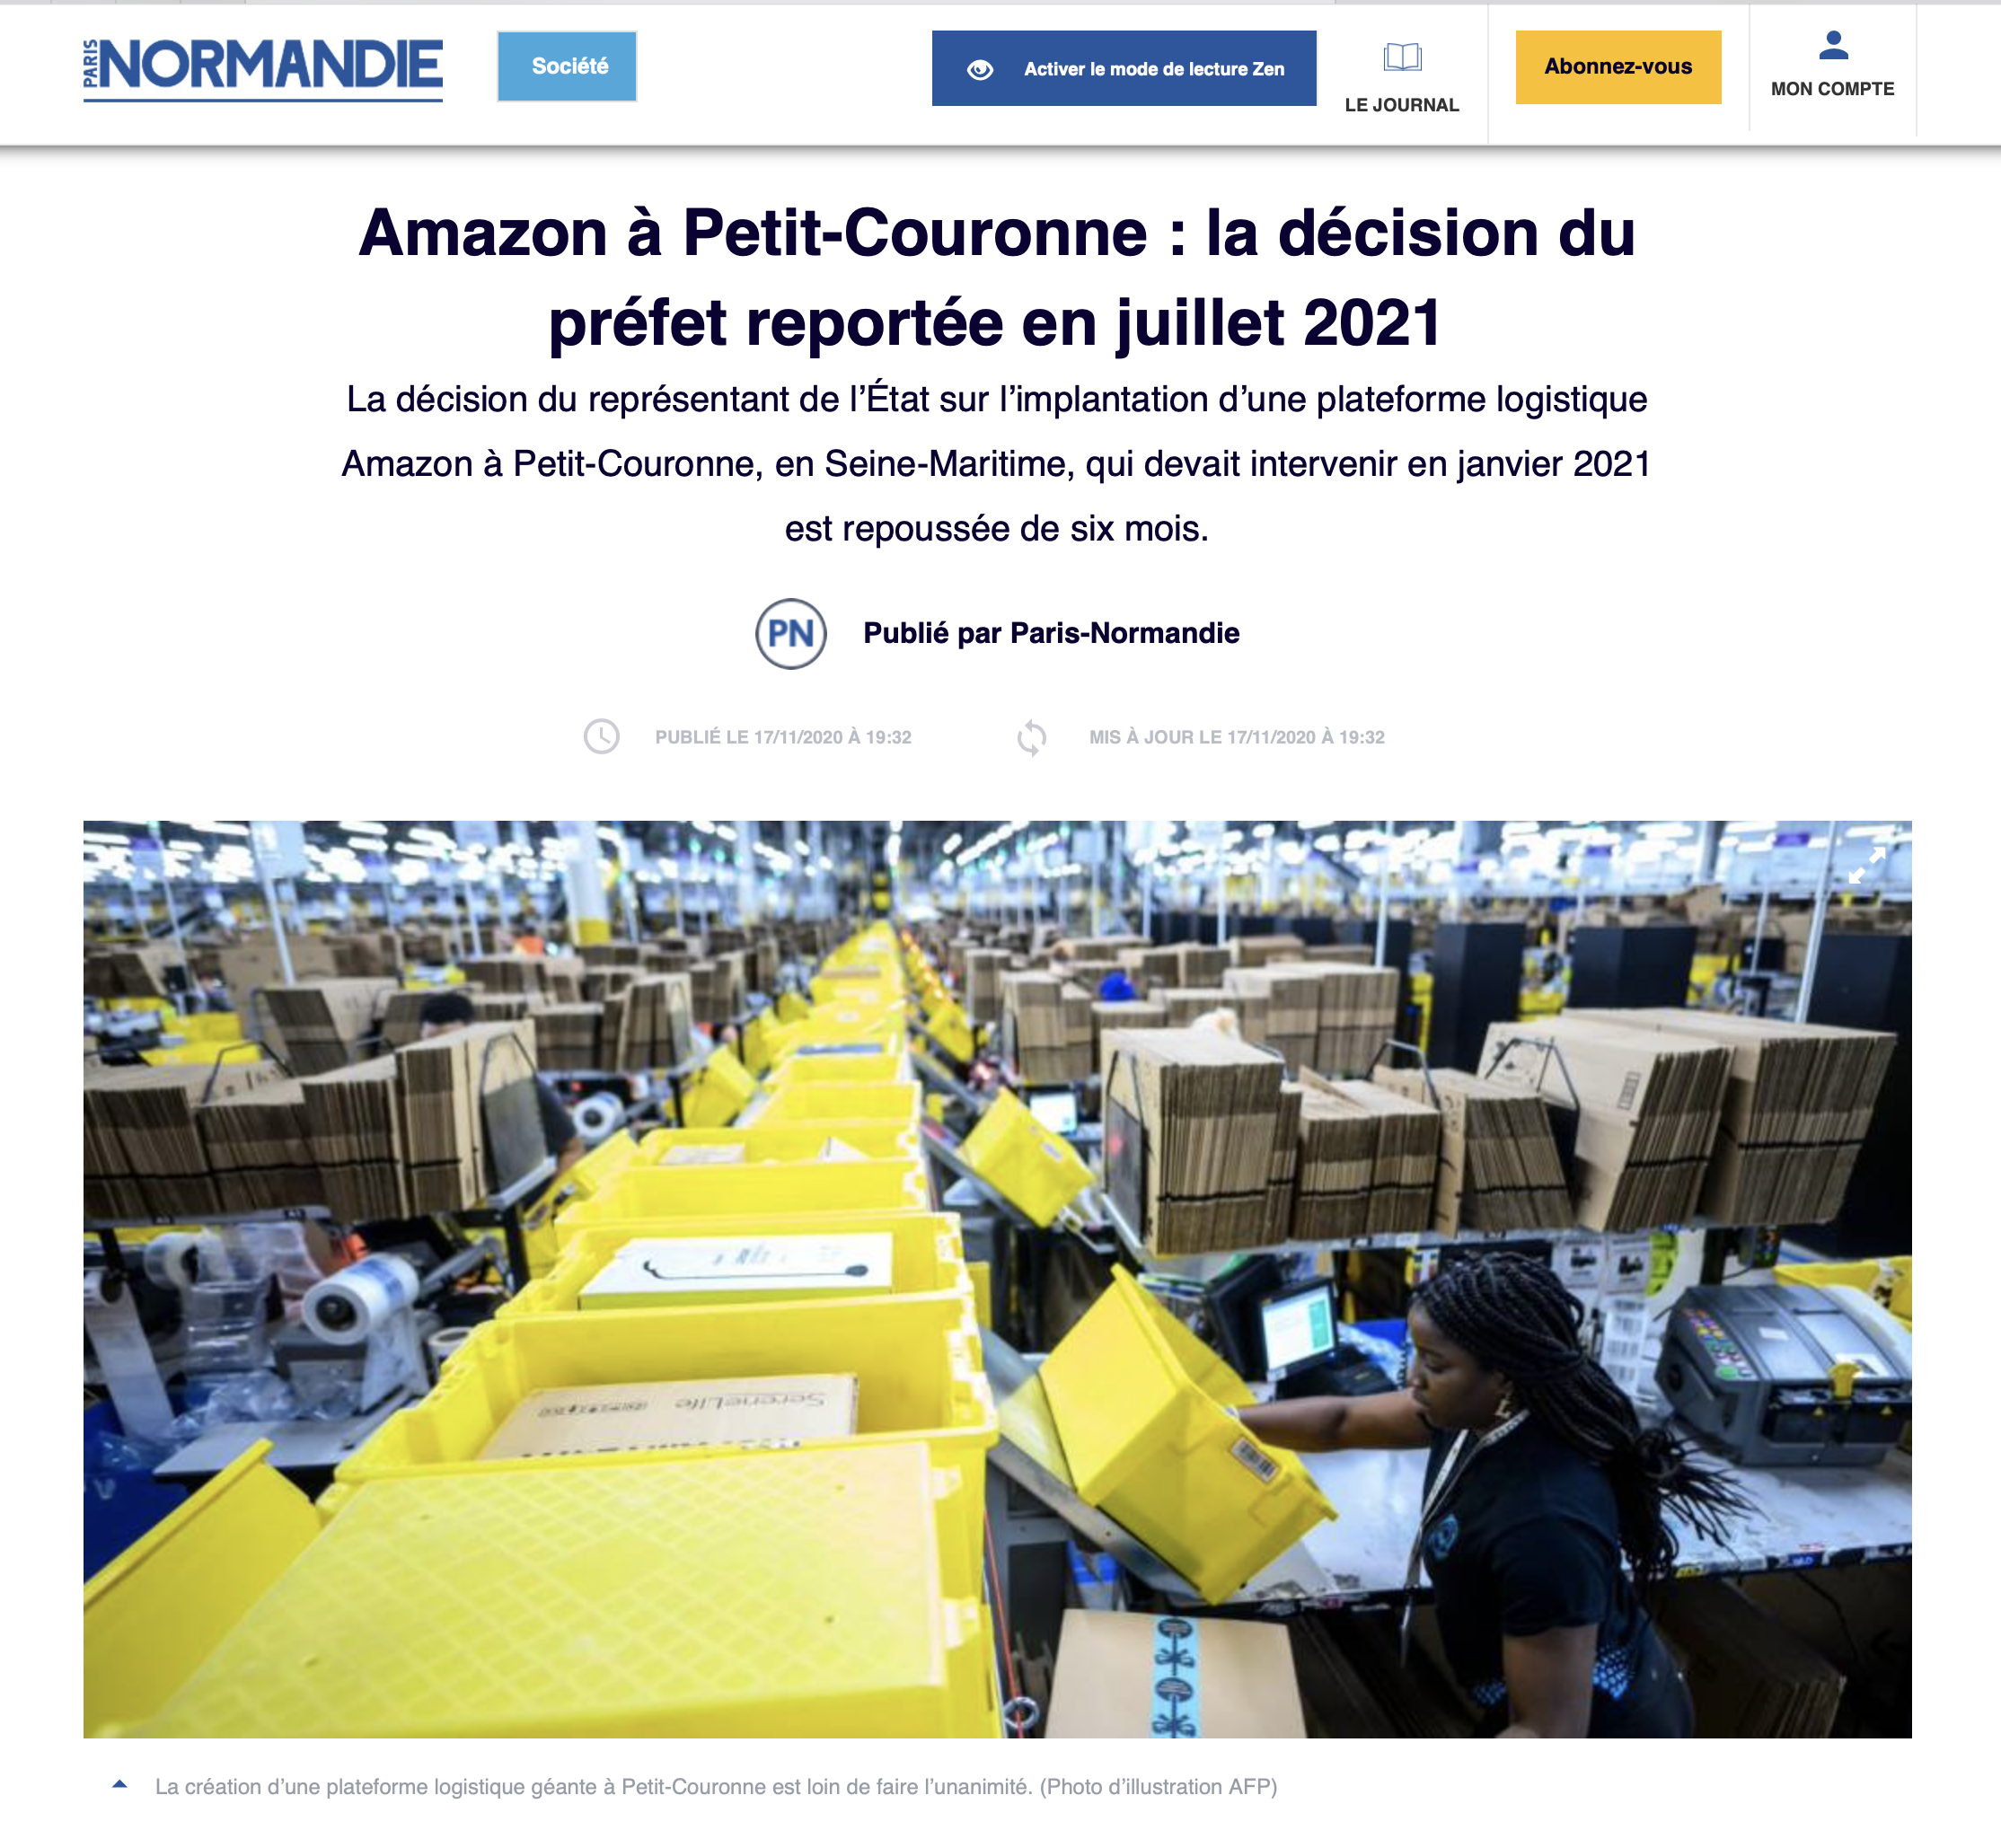 Amazon à Petit-Couronne : la décision du préfet reportée en juillet 2021 {HTML}